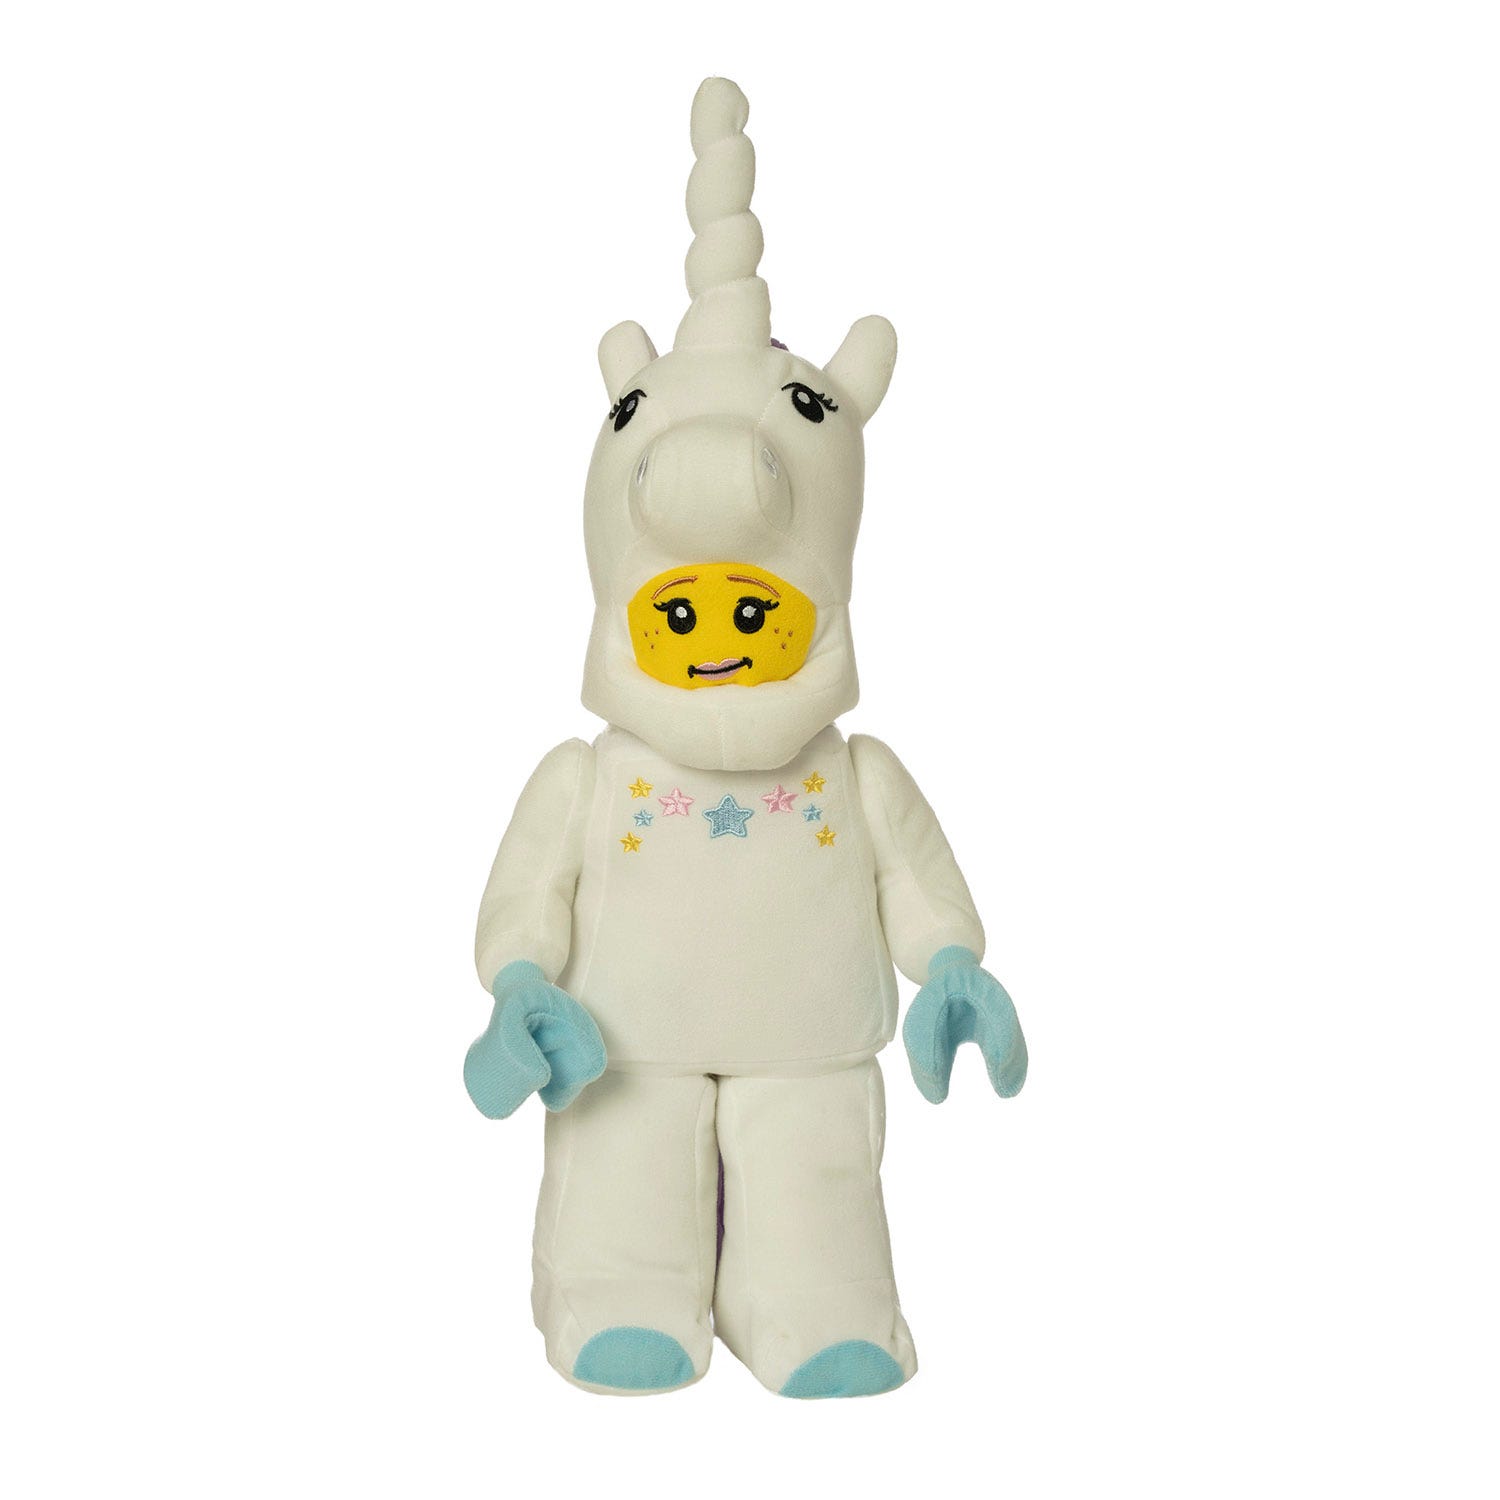 Lego figure, unicorn on Craiyon